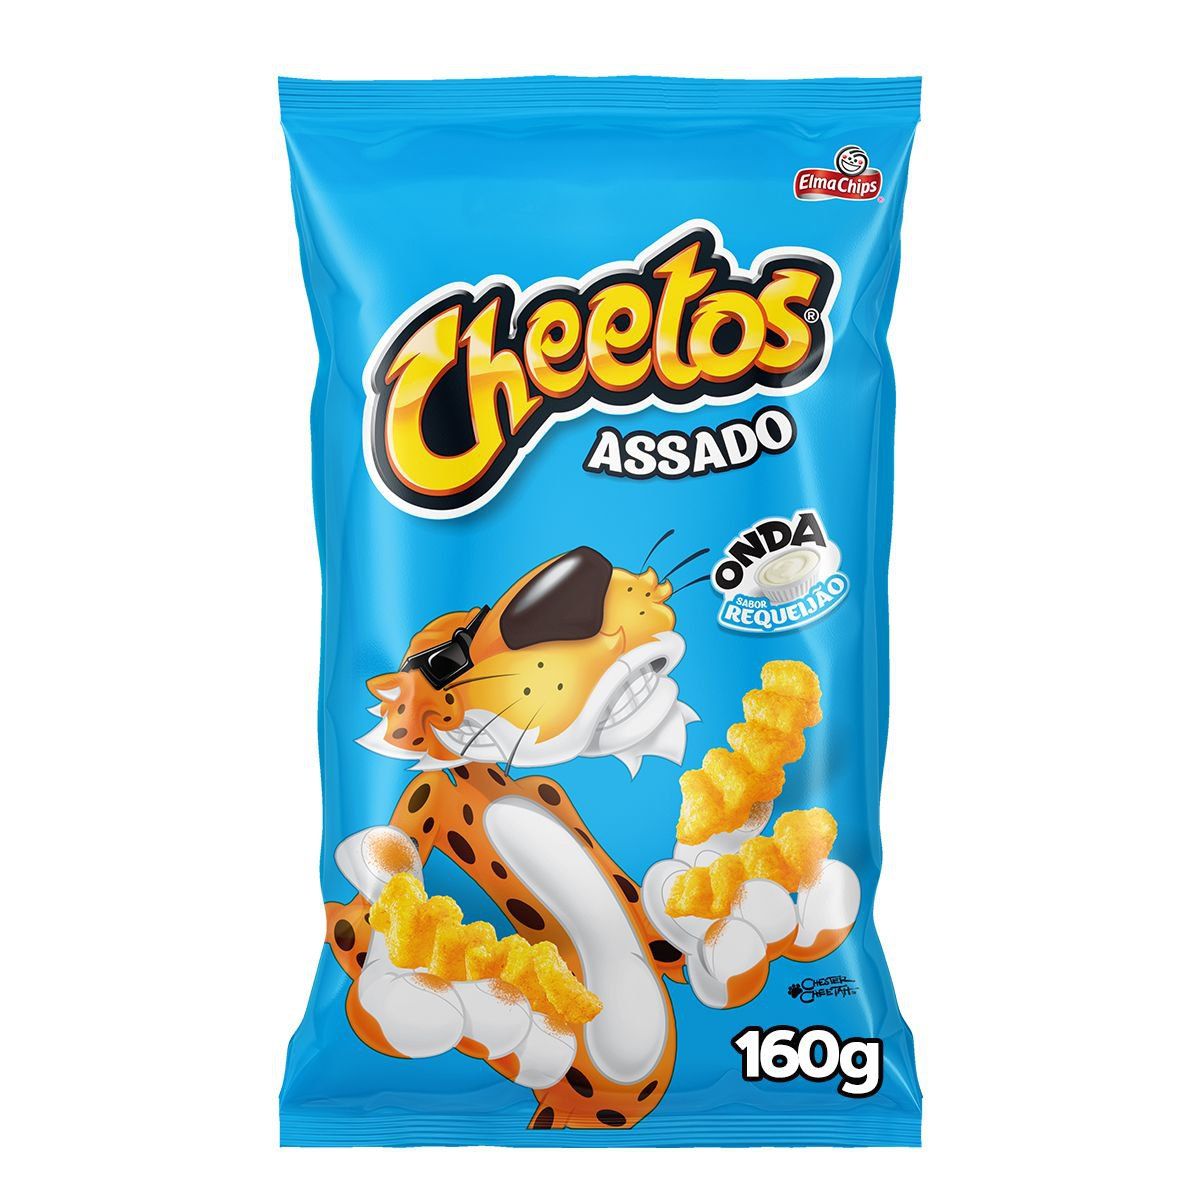 Salgadinho Cheetos Onda Requeijão Pacote 160g